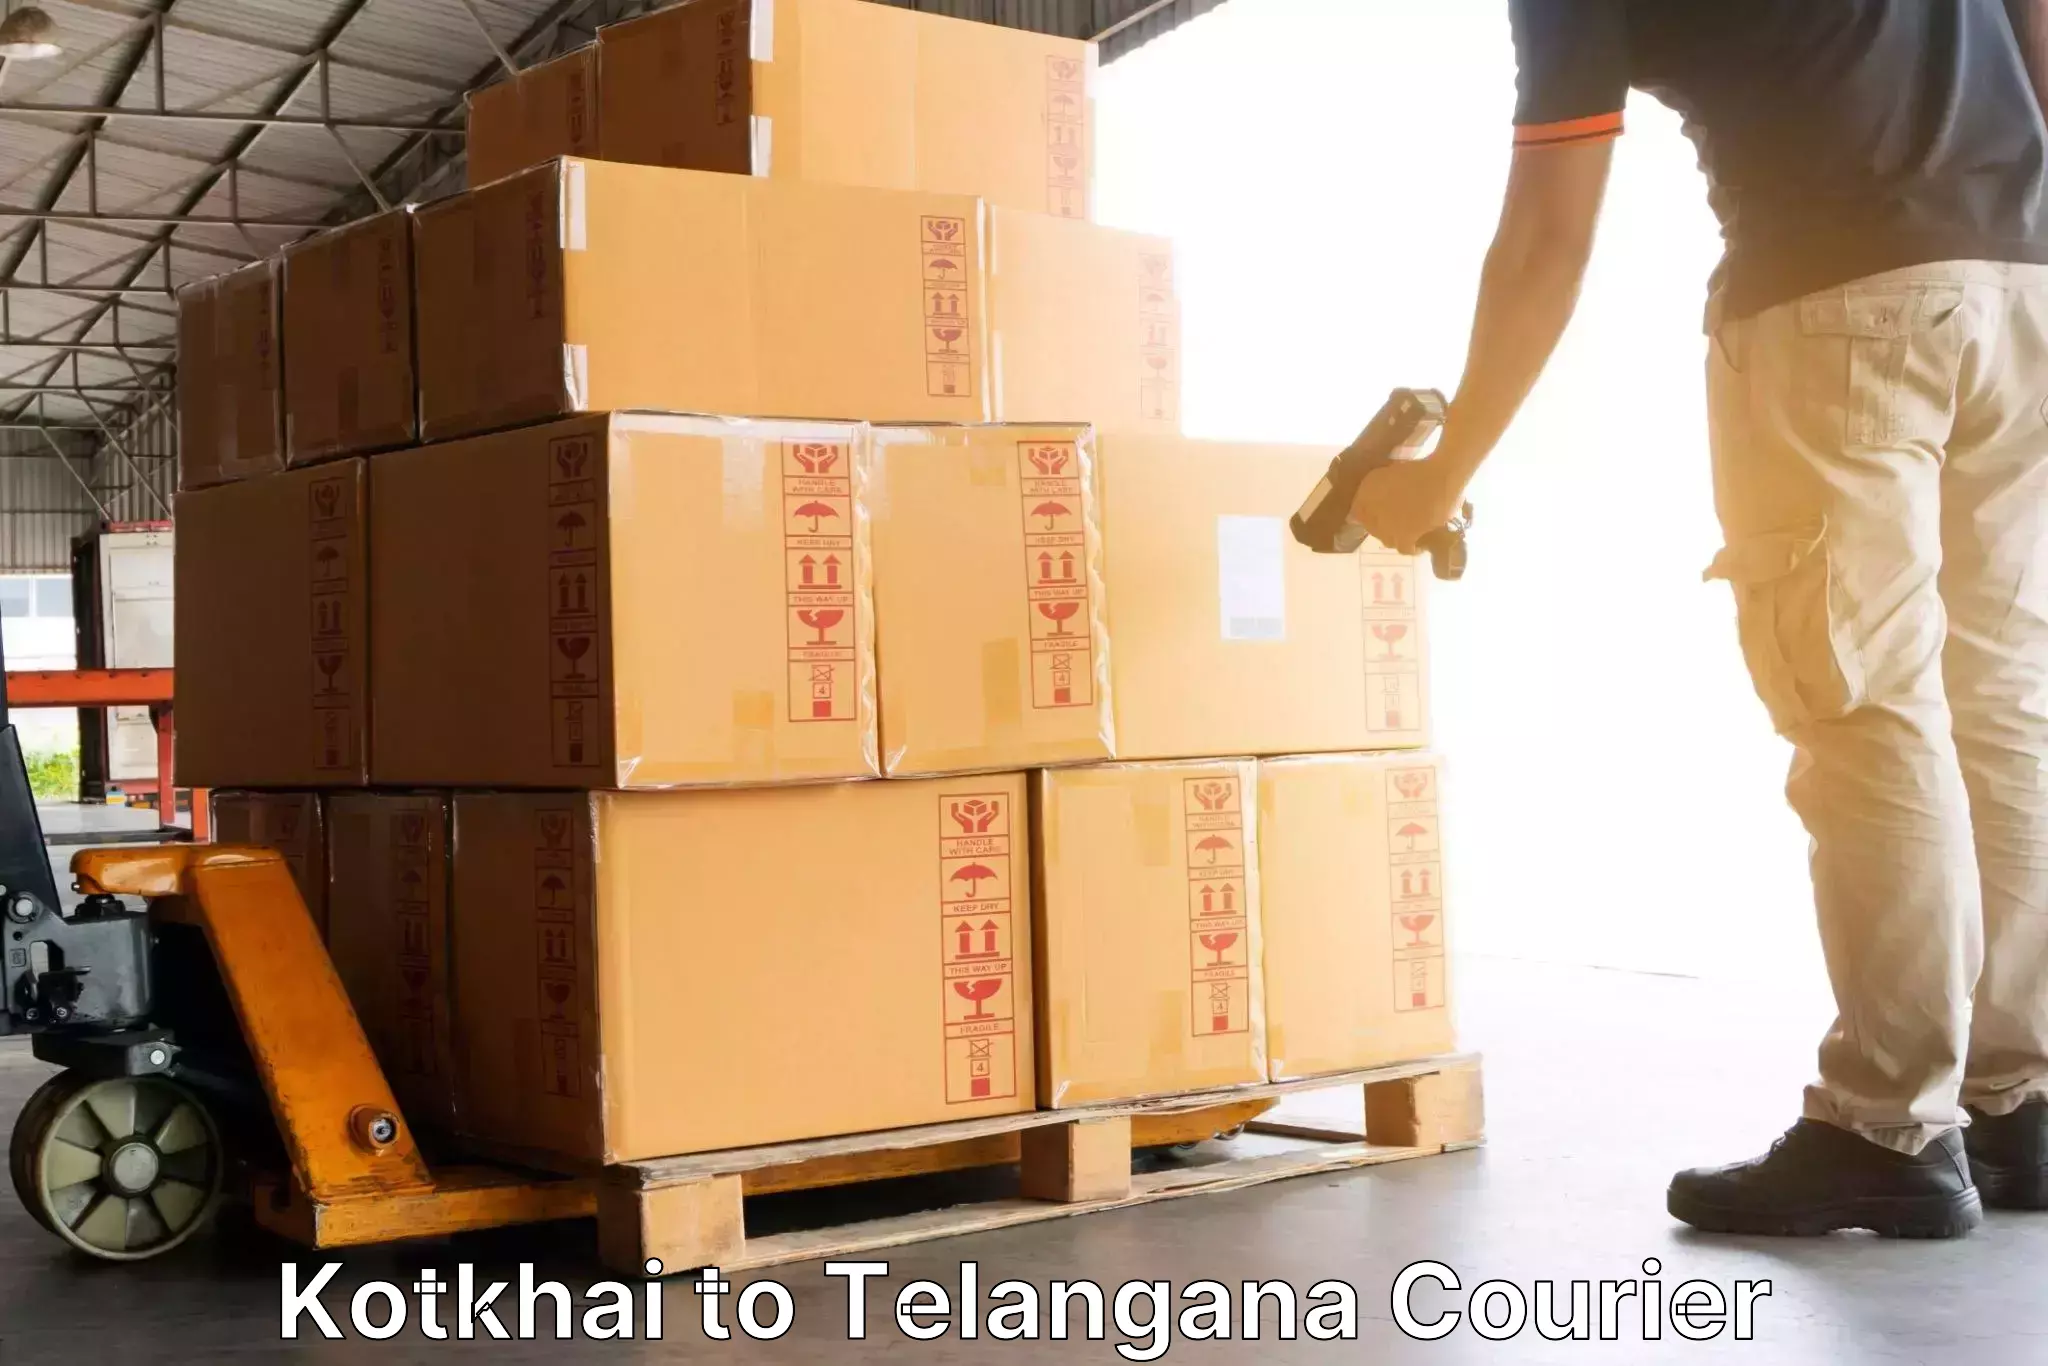 Tailored freight services Kotkhai to Nakerakal